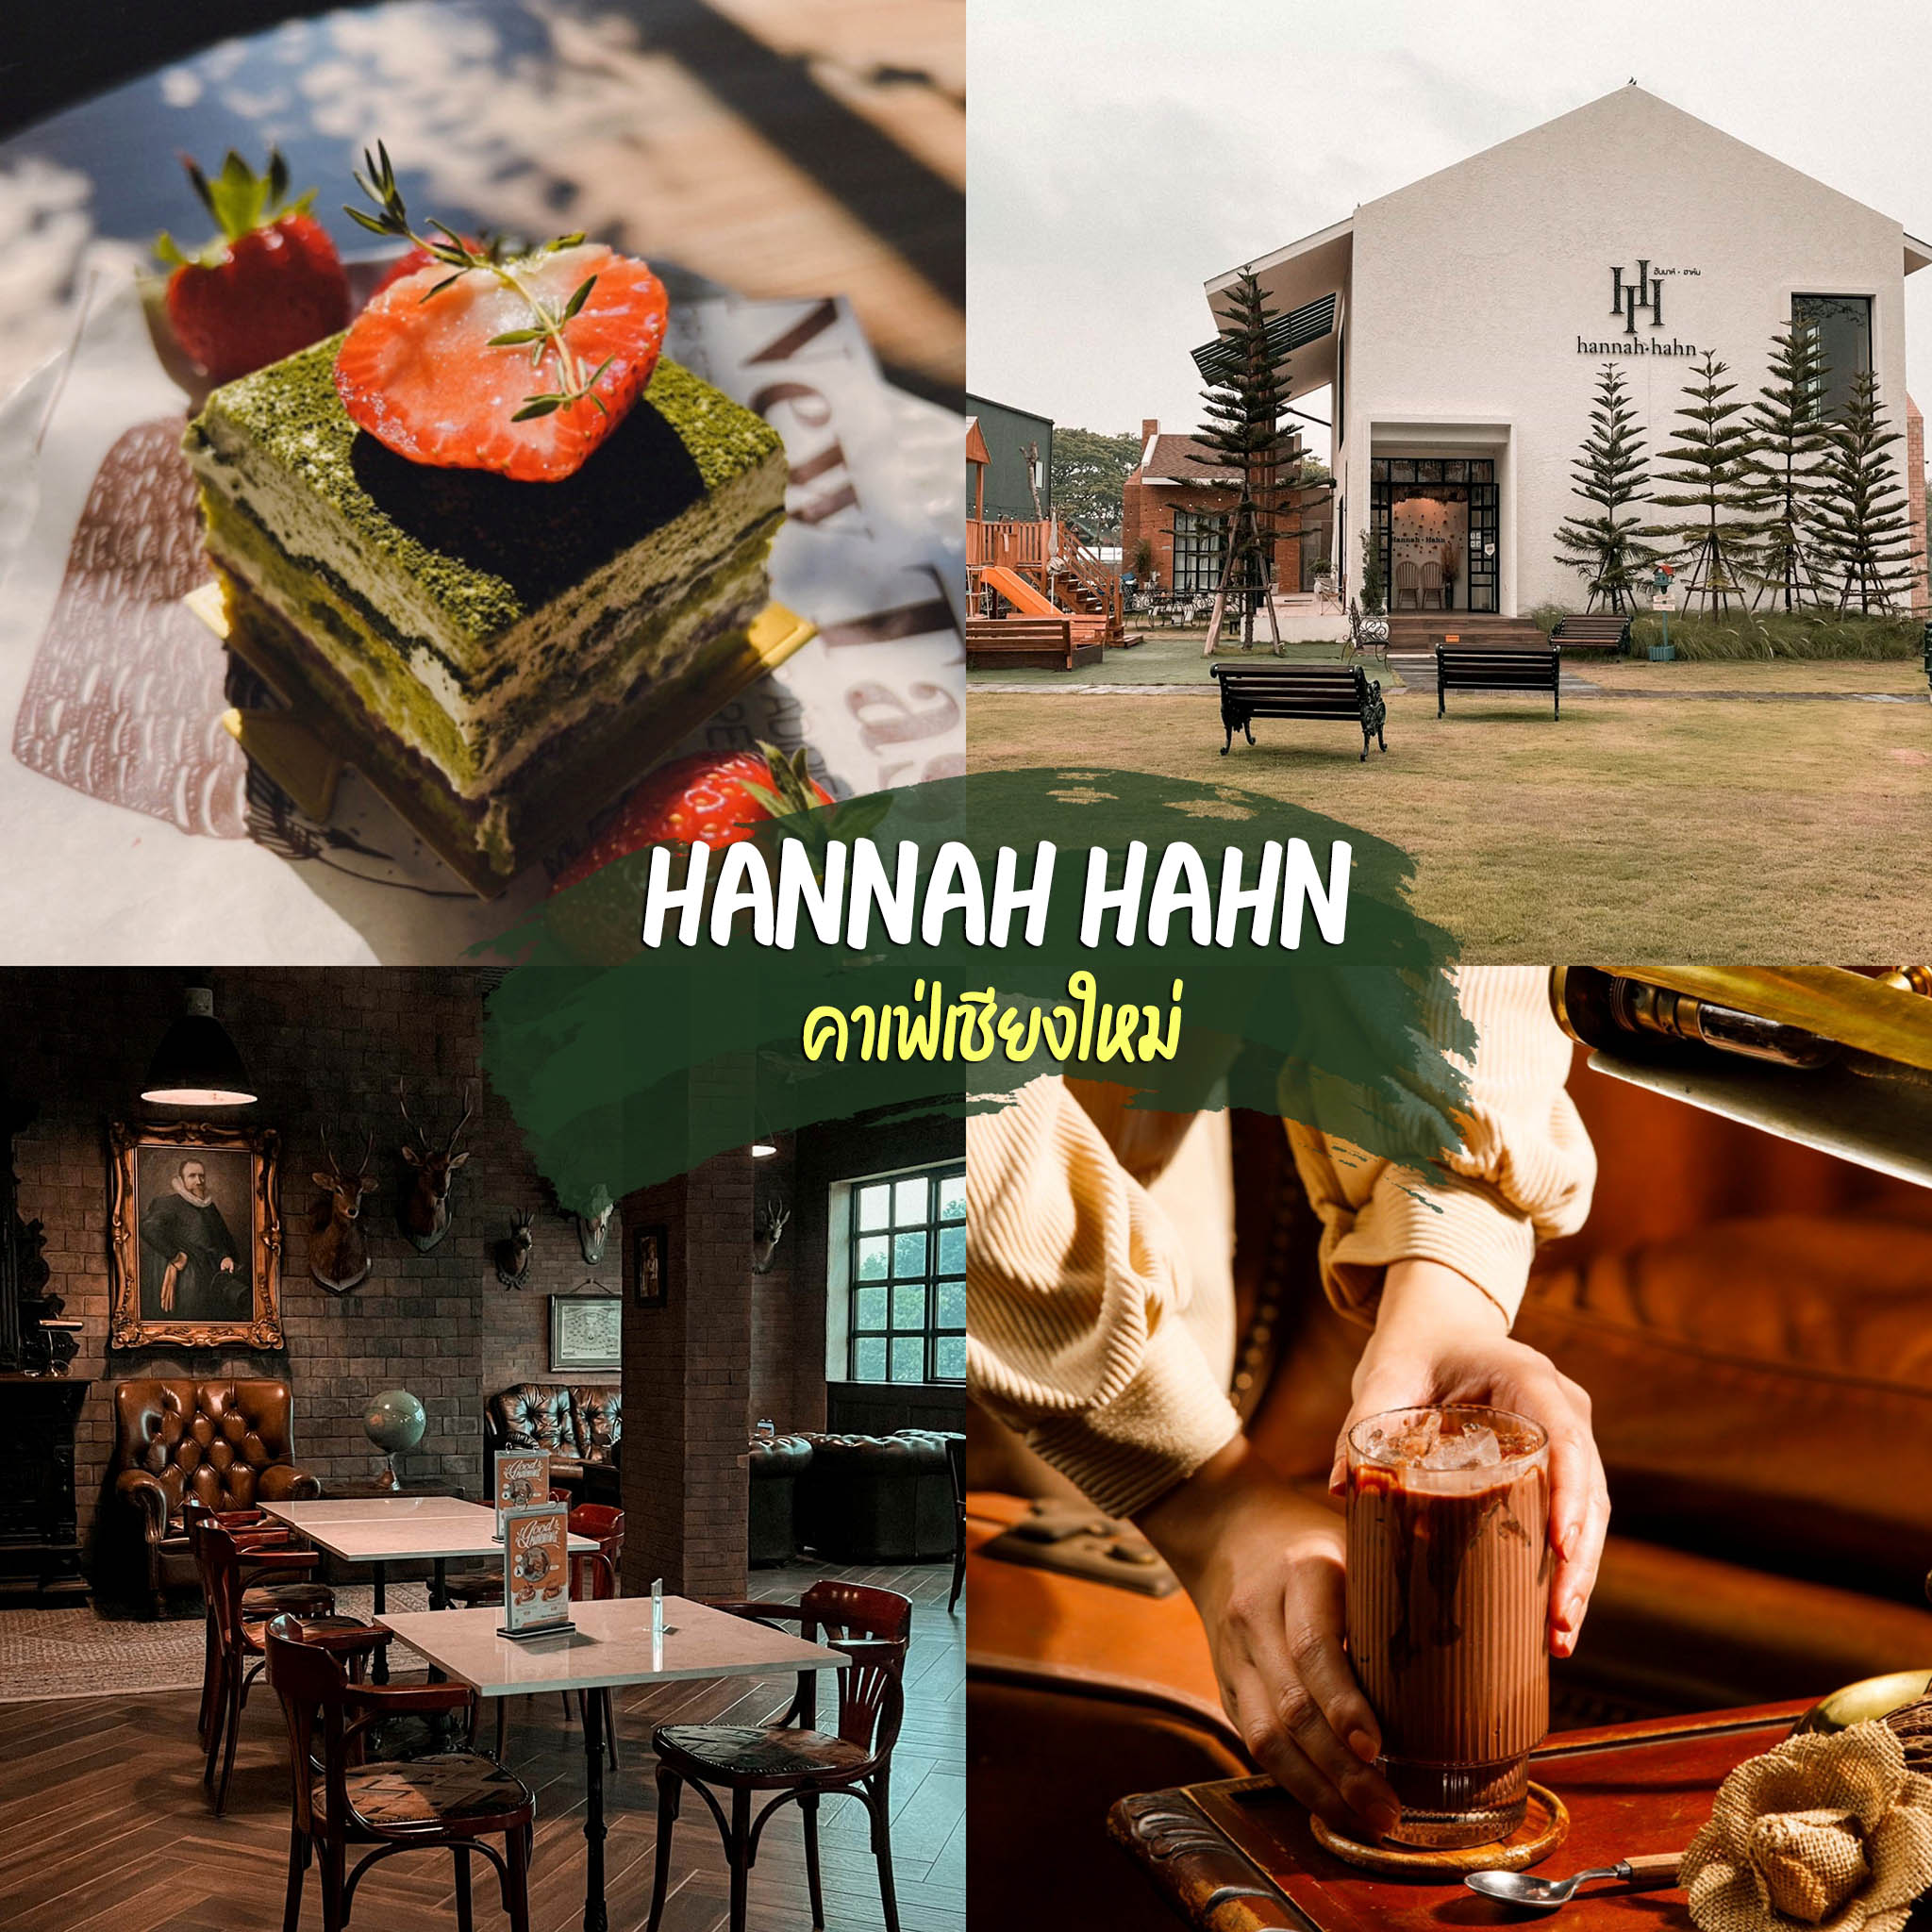 HANNAH HAHN Hannah Hahn，一家欧洲风格的清迈咖啡馆，设有室内和室外区域。我建议您必须入住。